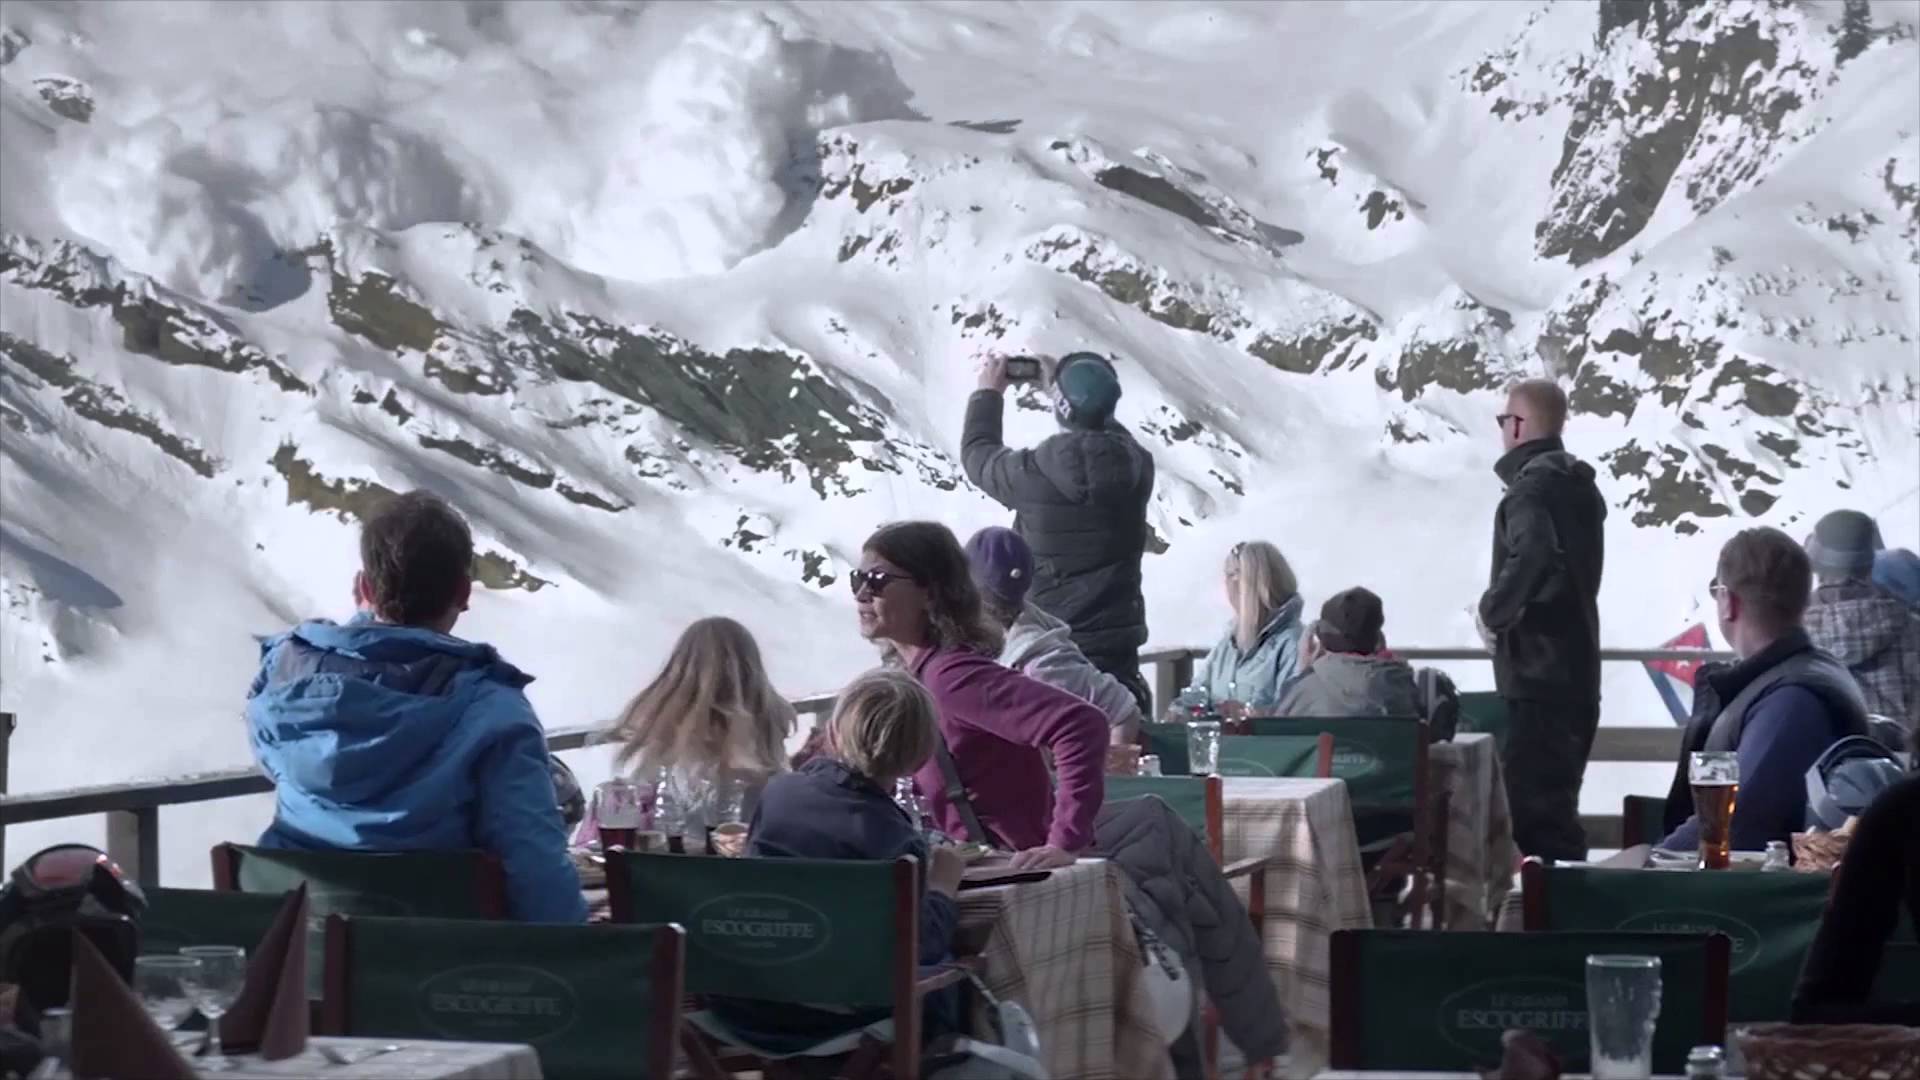 Una scena del film "Forza maggiore" che raffigura i commensali di un ristorante all'aperto che vedono all'improvviso staccarsi dalla montagna antistante una valanga che rischia di travolgerli